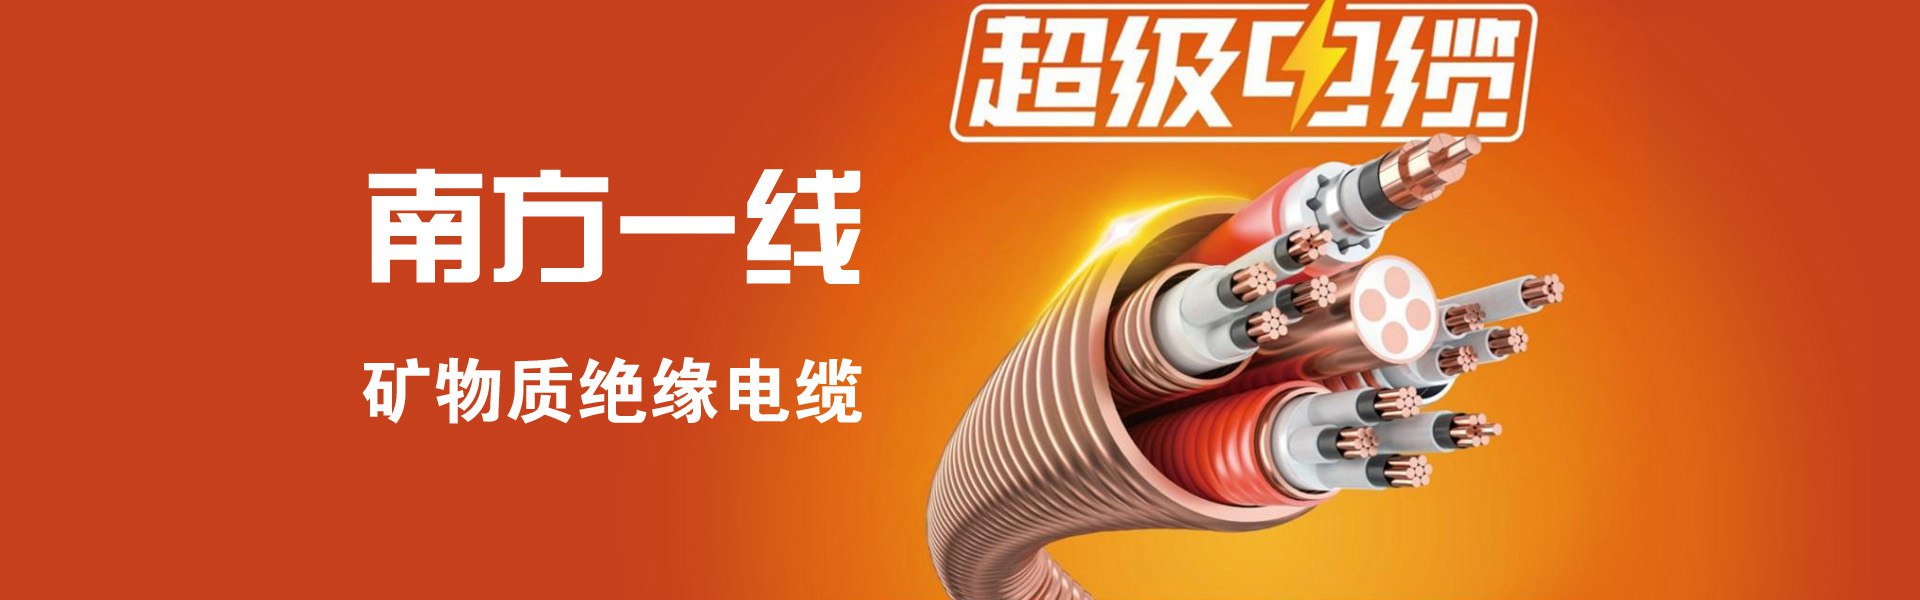 广州南方科技珠江电缆